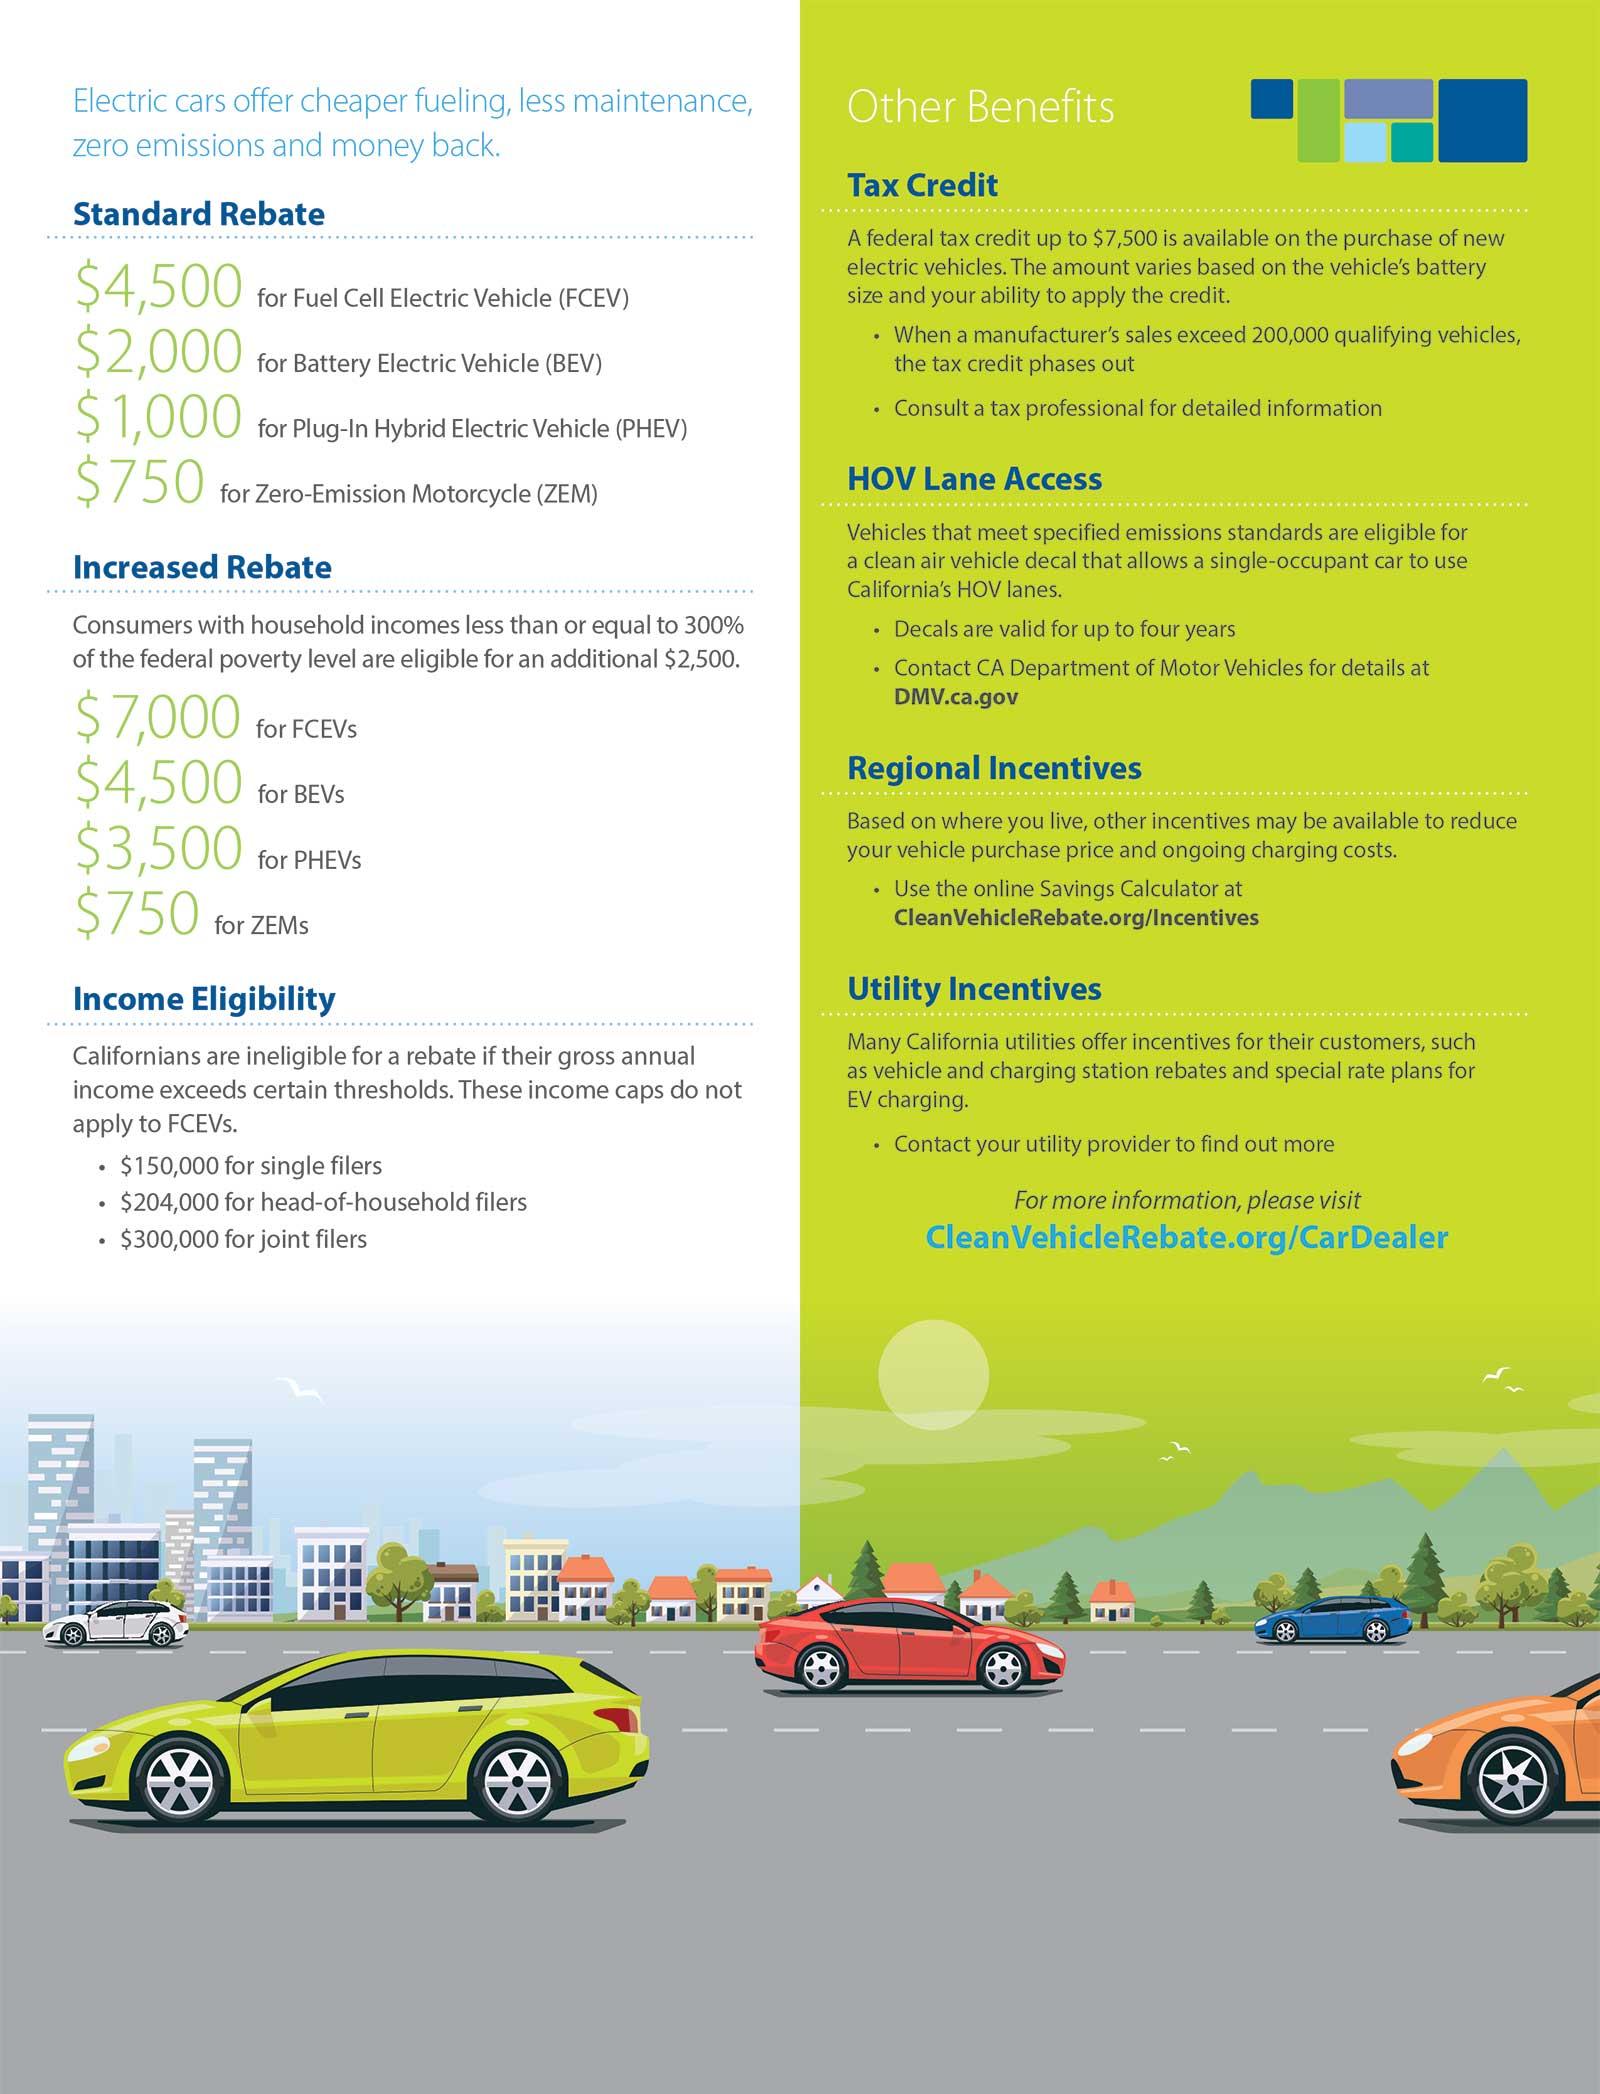 Clean Vehicle Rebate Tax